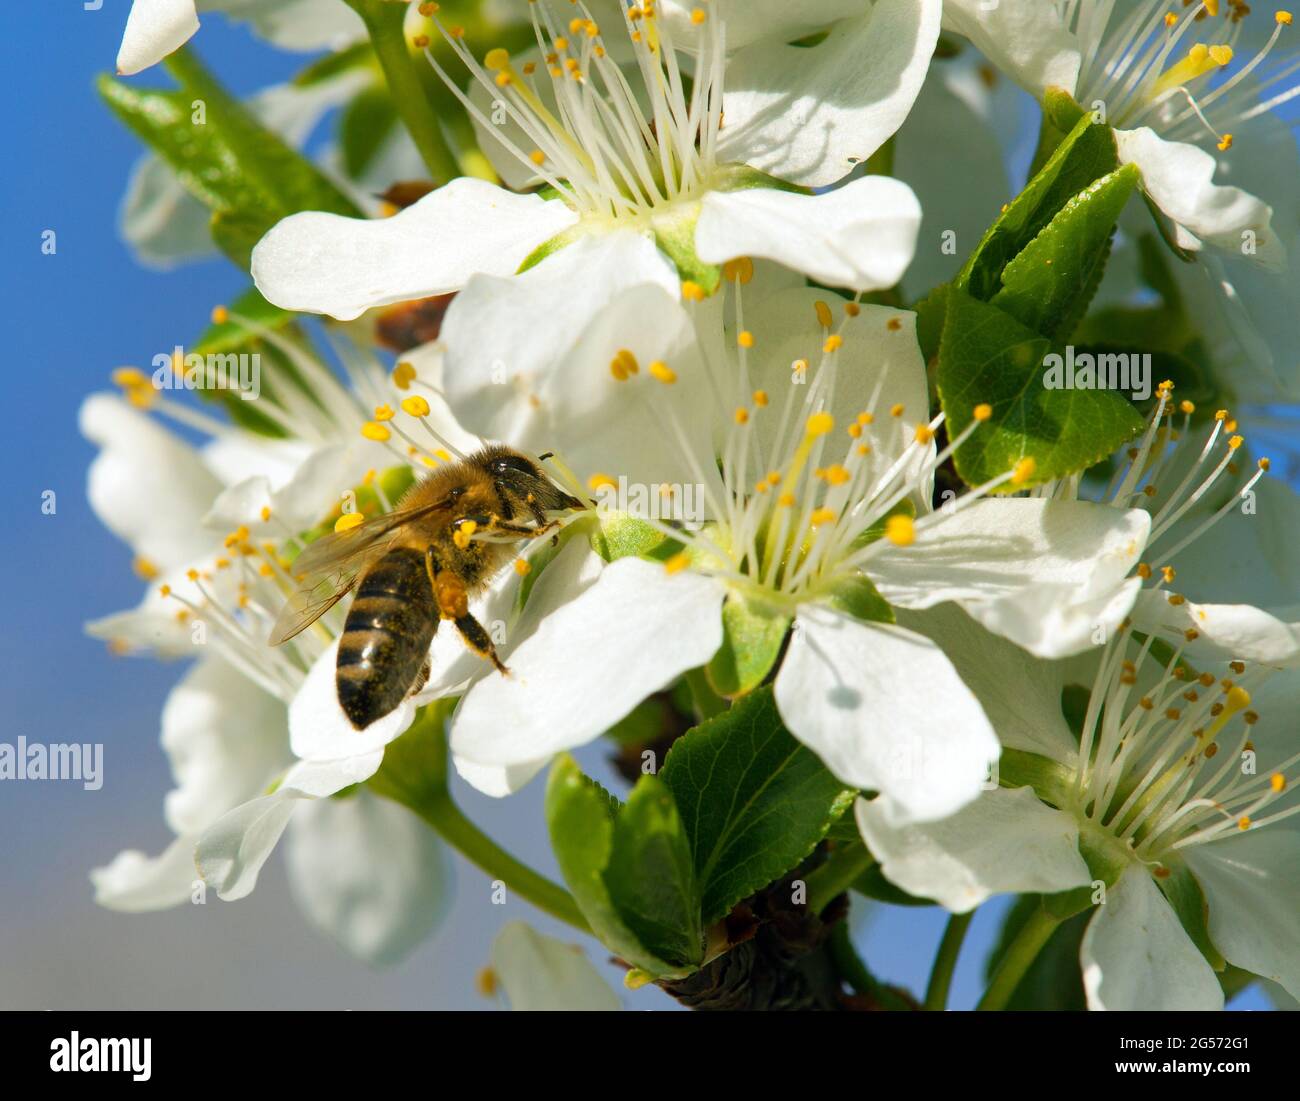 Biene oder Honigbiene auf weißen Pflaumenbaum Blume, Honigbiene ist in latein apis mellifera, Frühling Ansicht Stockfoto